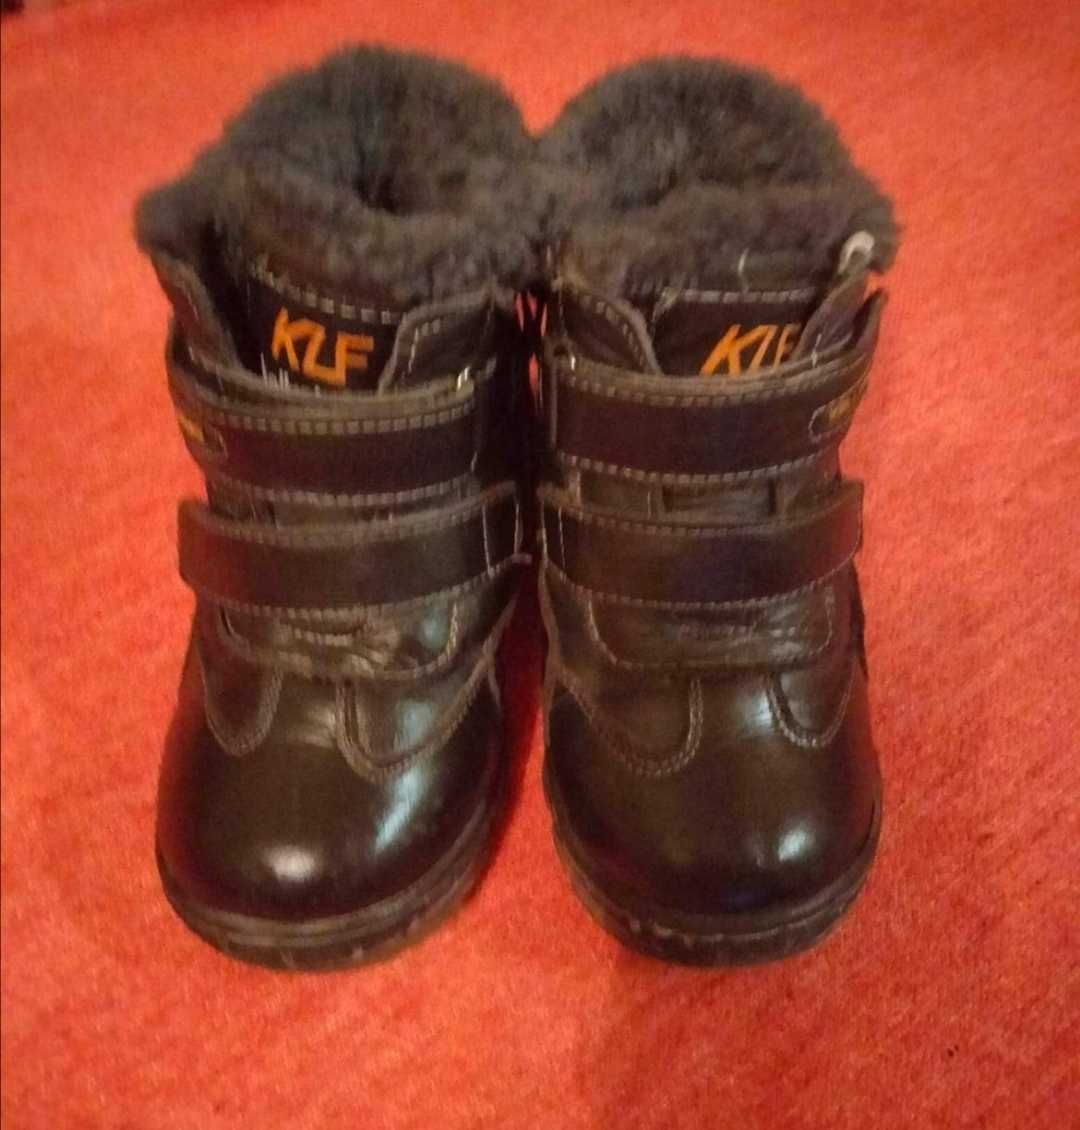 Продам тёплые зимние  кожаные ботинки  ботиночки сапожки для мальчика